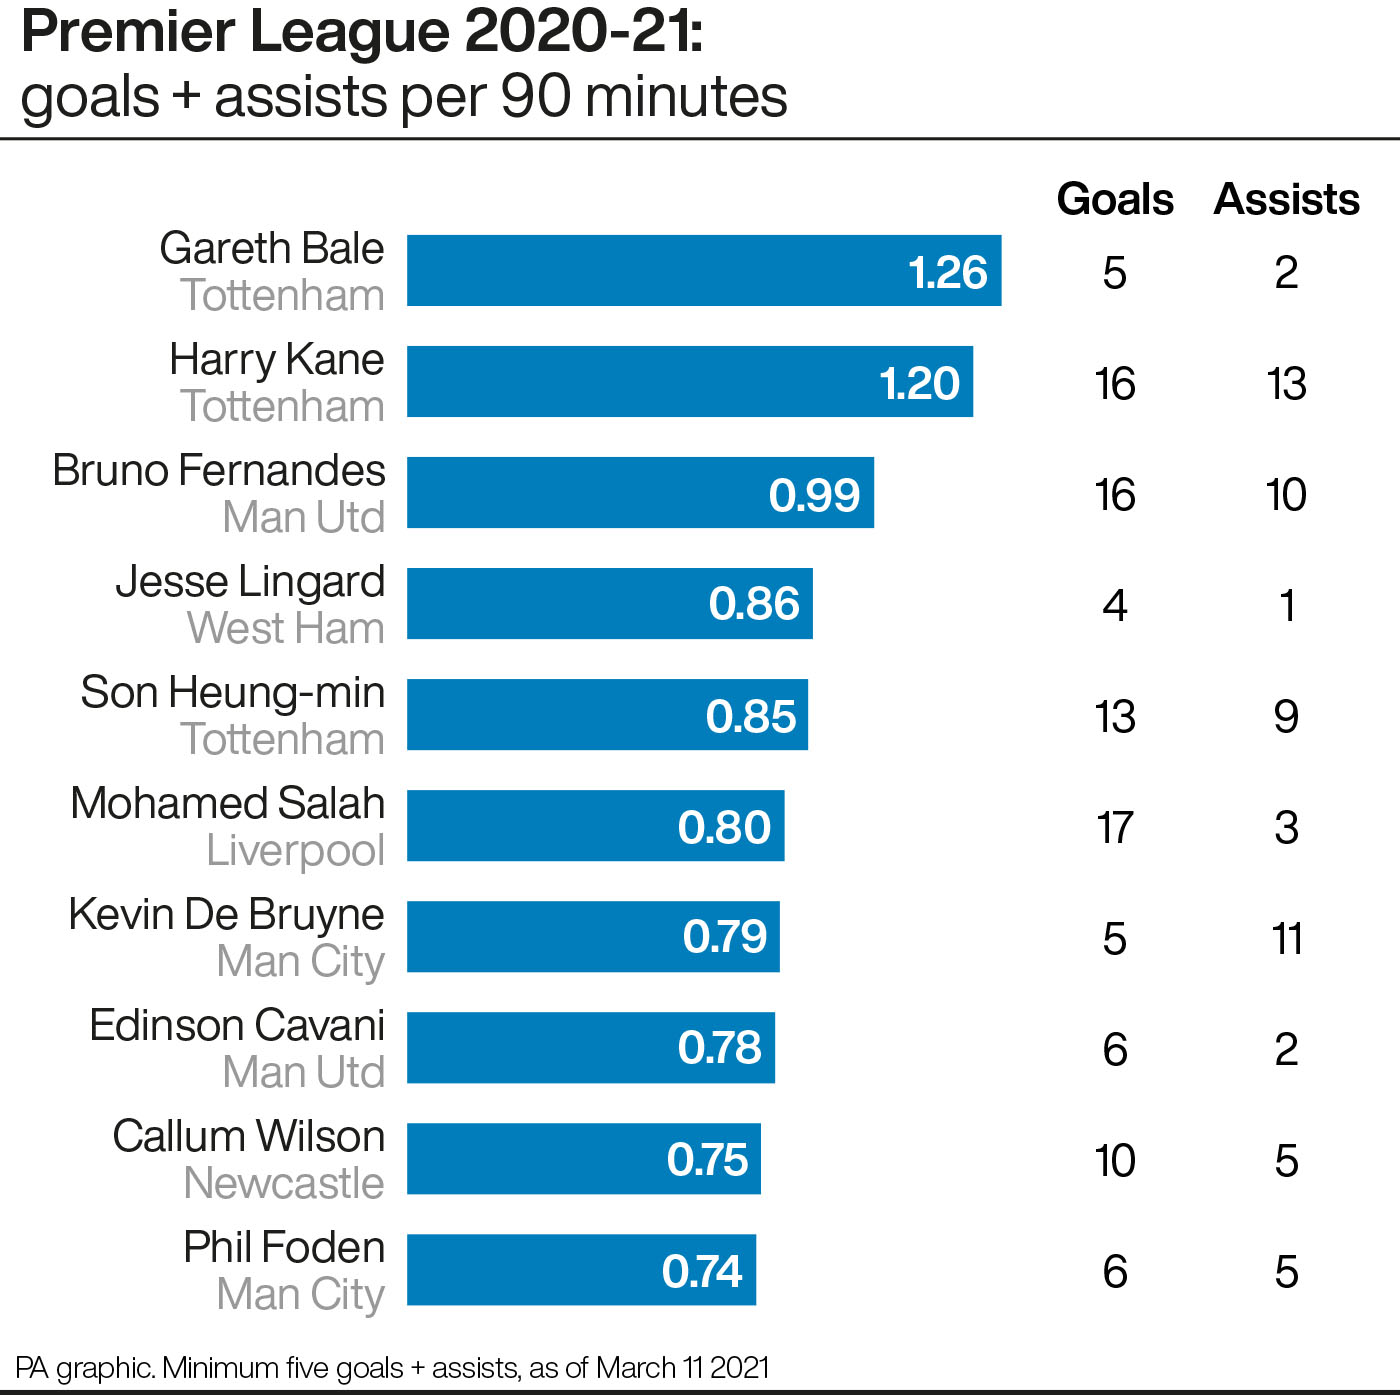 Premier League 2020-21: Goals and assists per 90 minutes